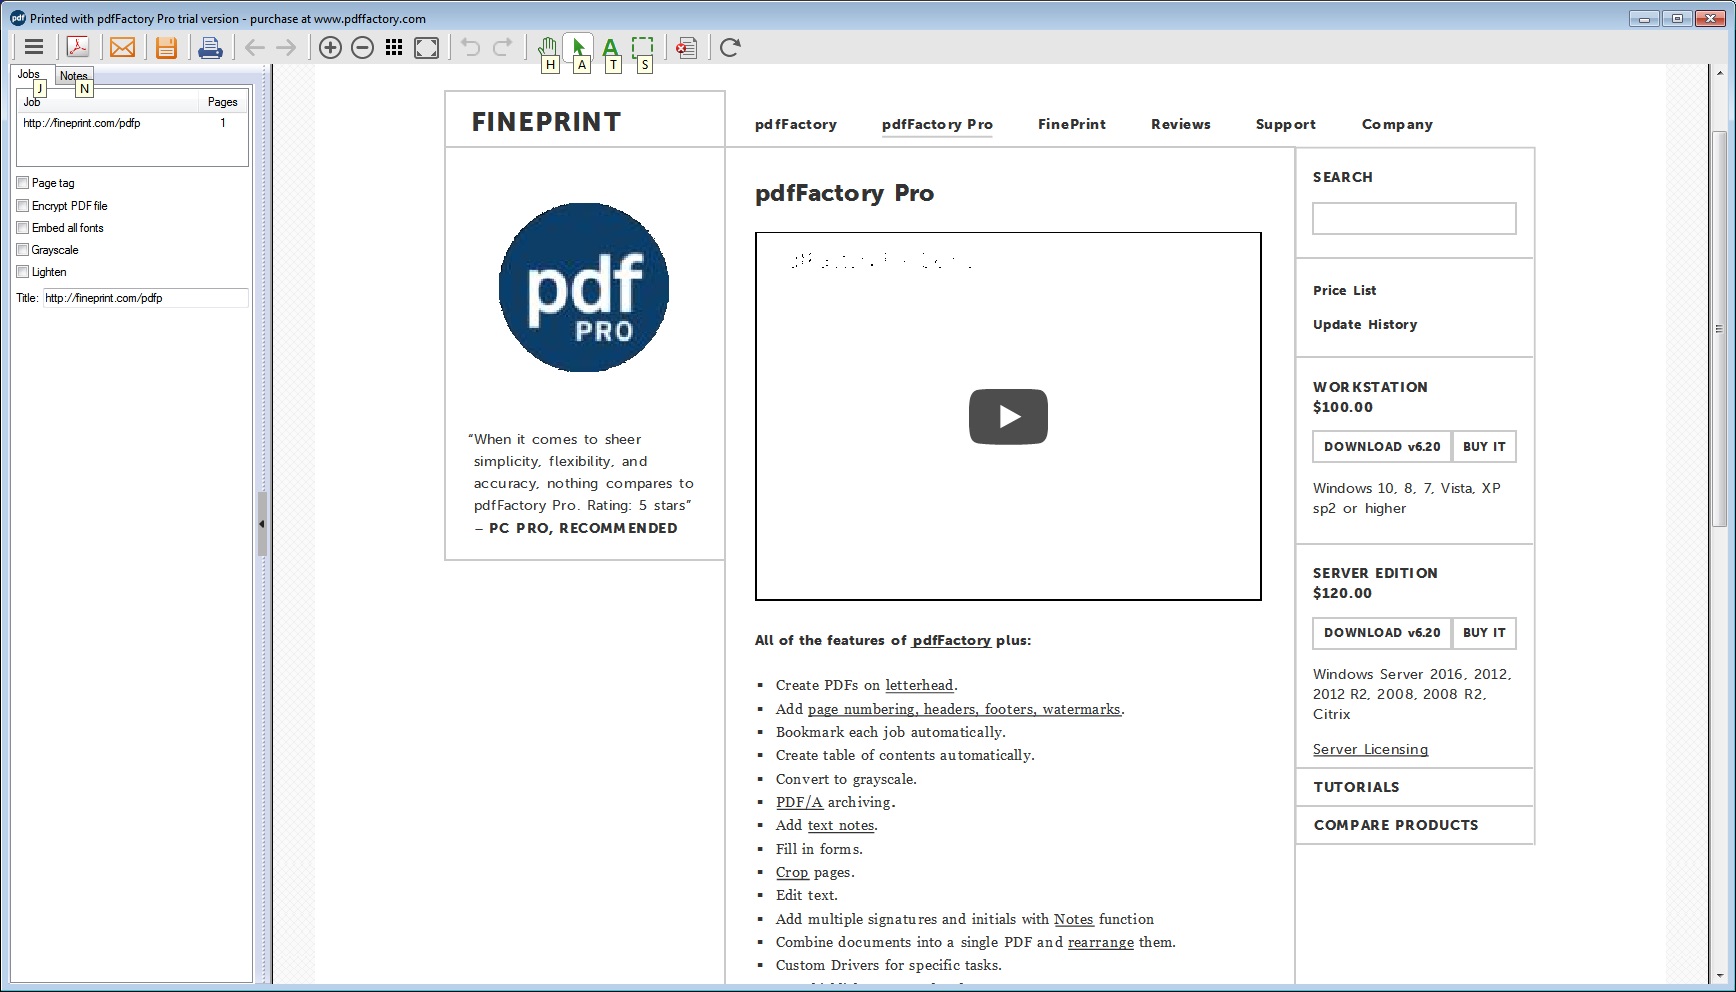 fine print pdffactory